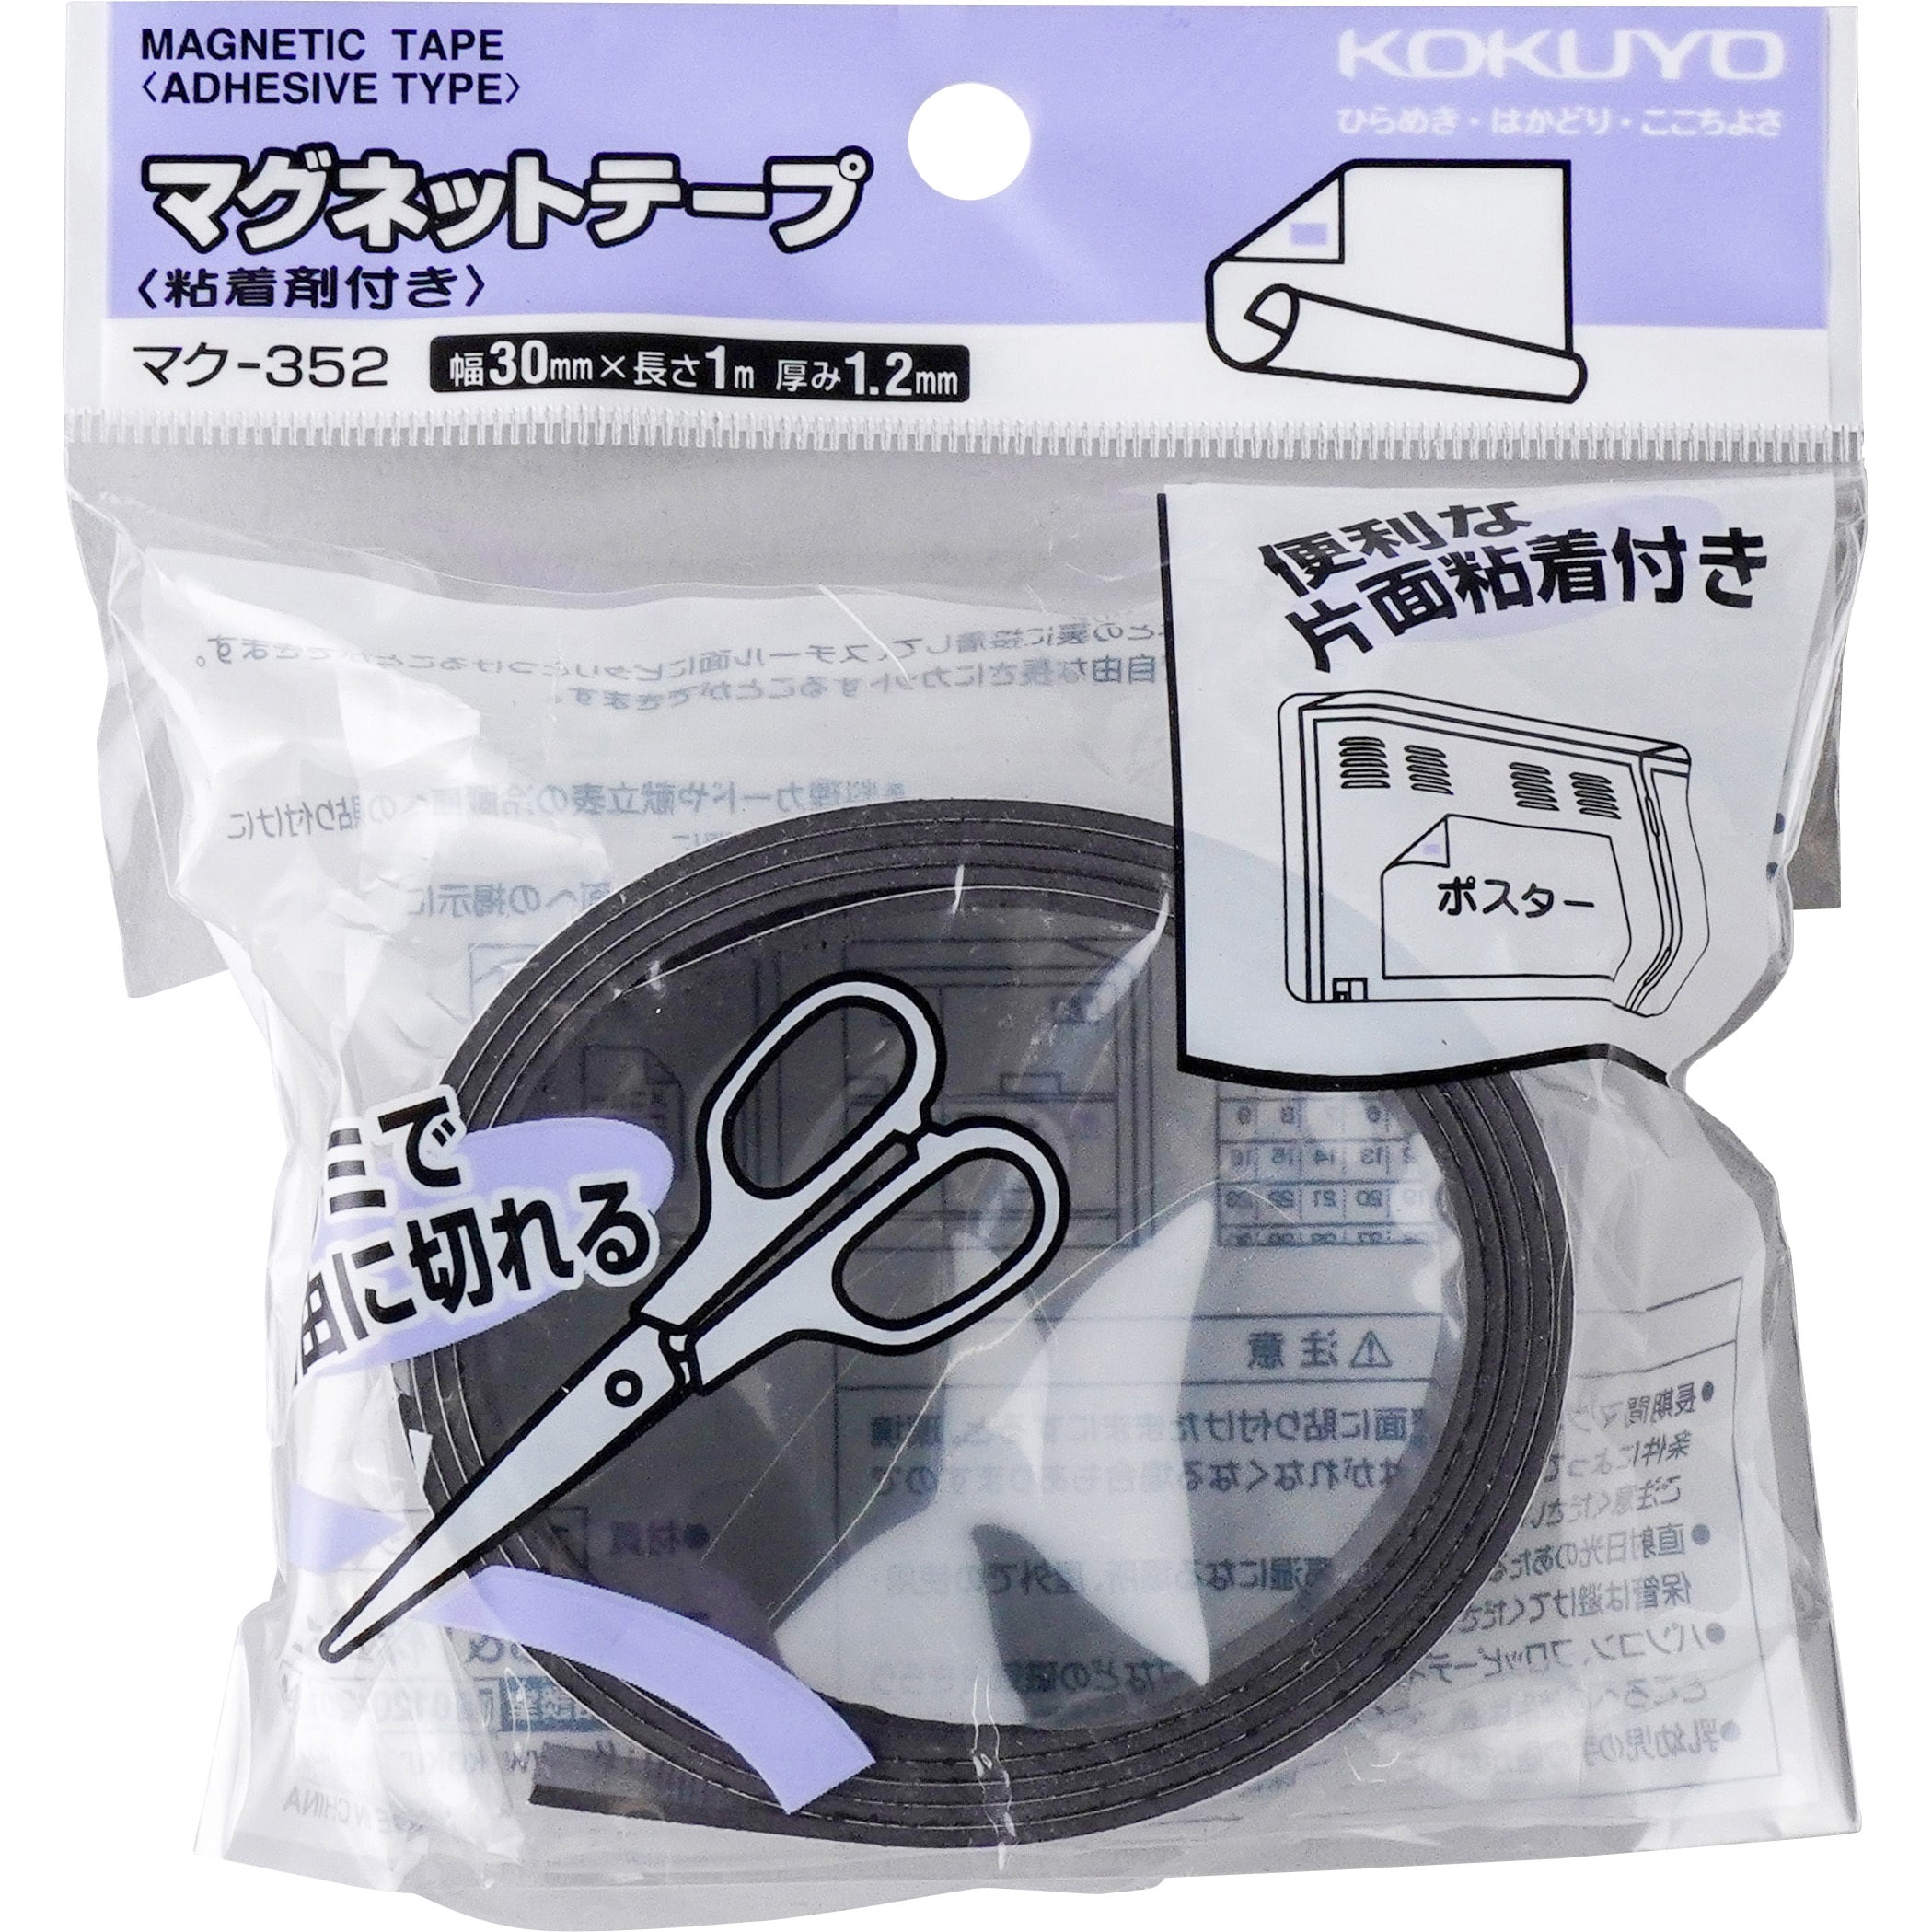 マク-352 マグネットテープ(粘着剤付き) 1巻(1m) コクヨ 【通販サイト